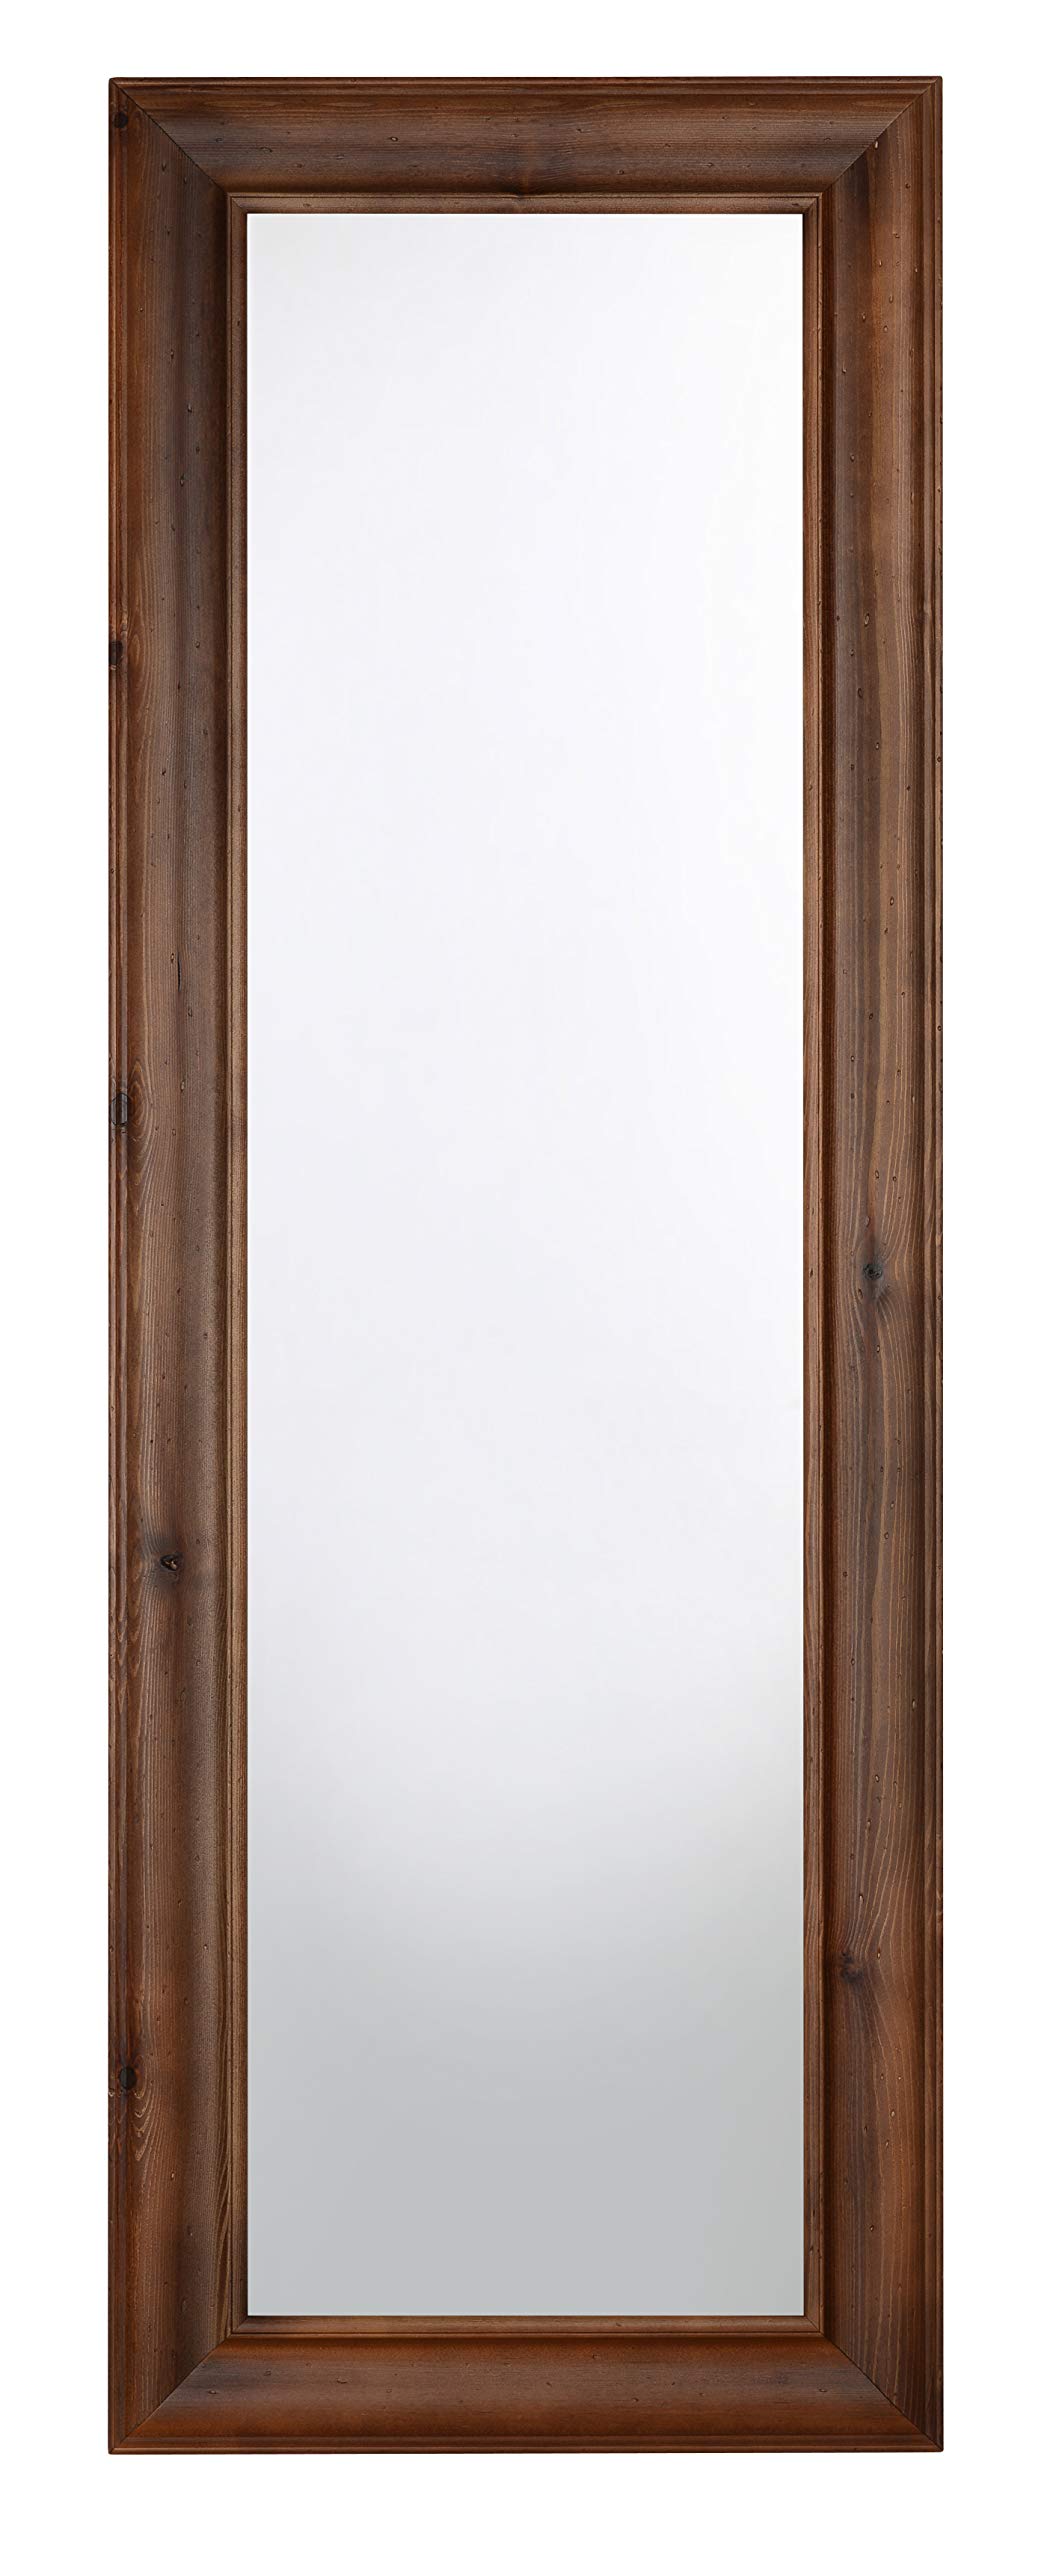 MO.WA Wandspiegel Spiegel Holzspiegel 51x146 Nussfarbe Spiegel klassisch Aufhängen vertikal und quer Ganzkörperspiegel im Landhaus Stil mit Massivholzrahmen